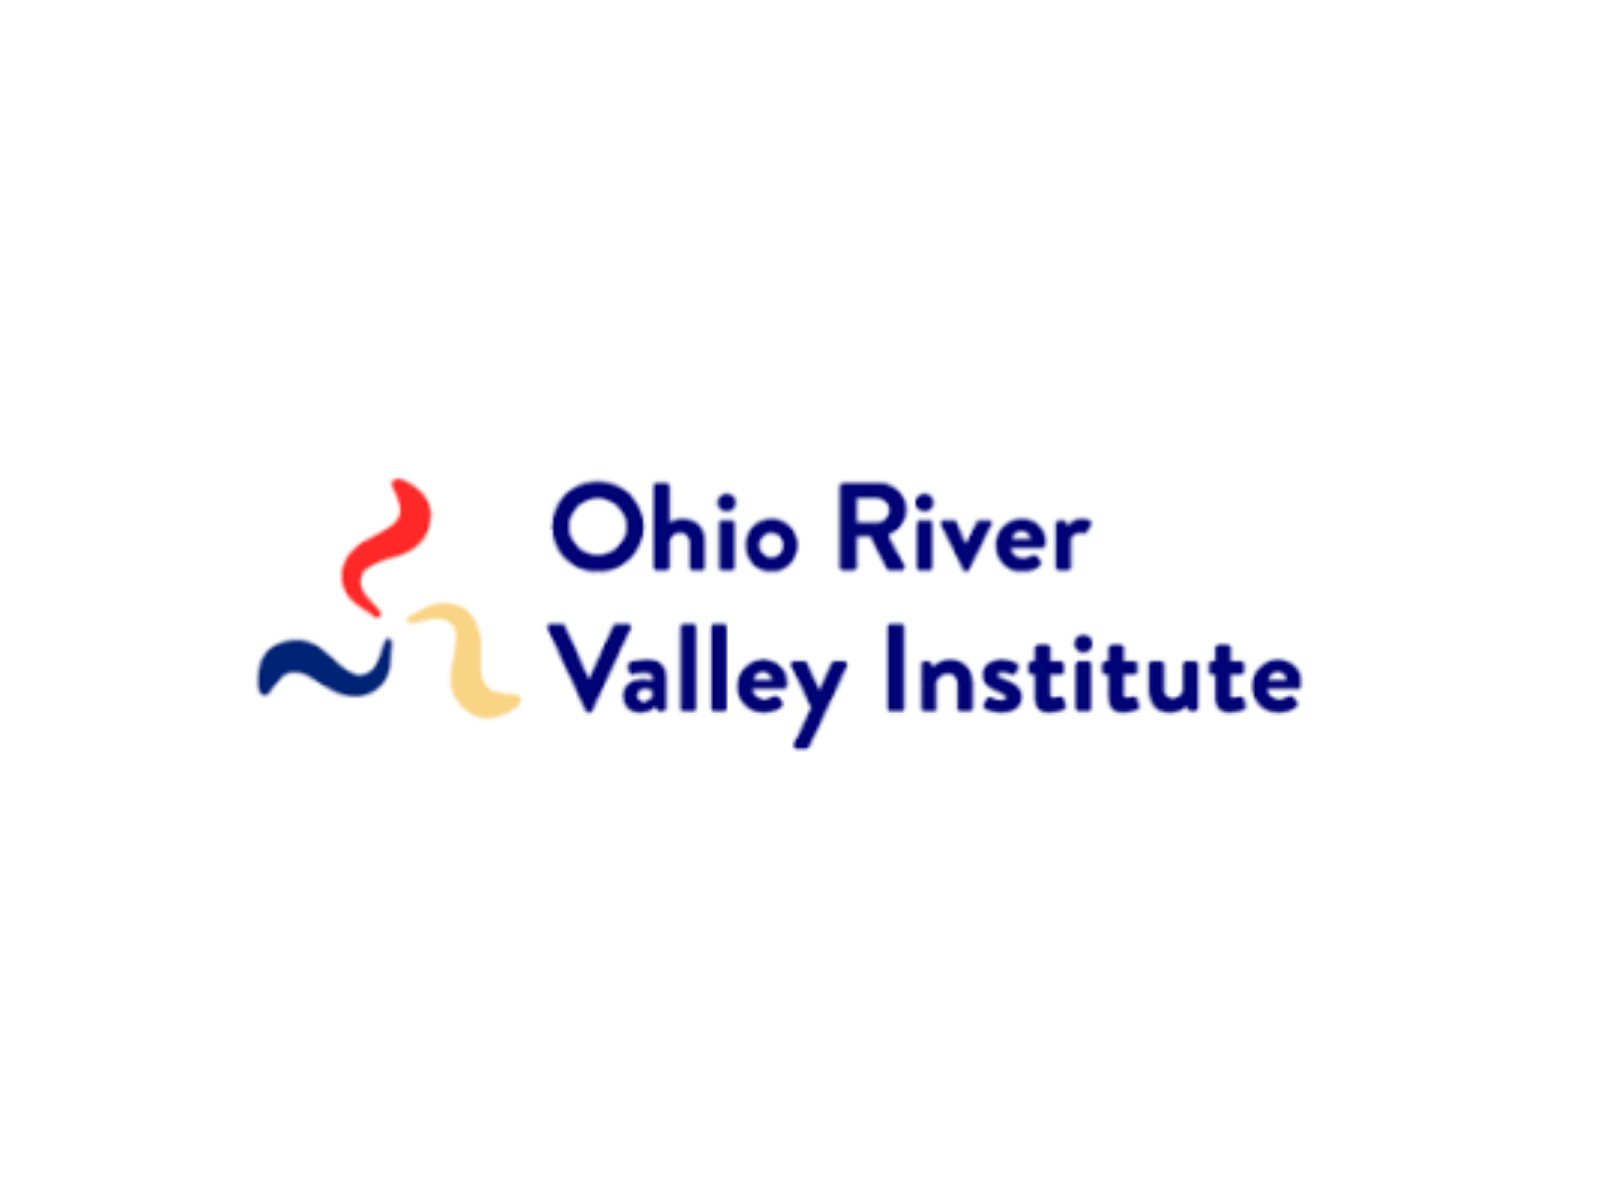 Ohio River Valley Institute logo.